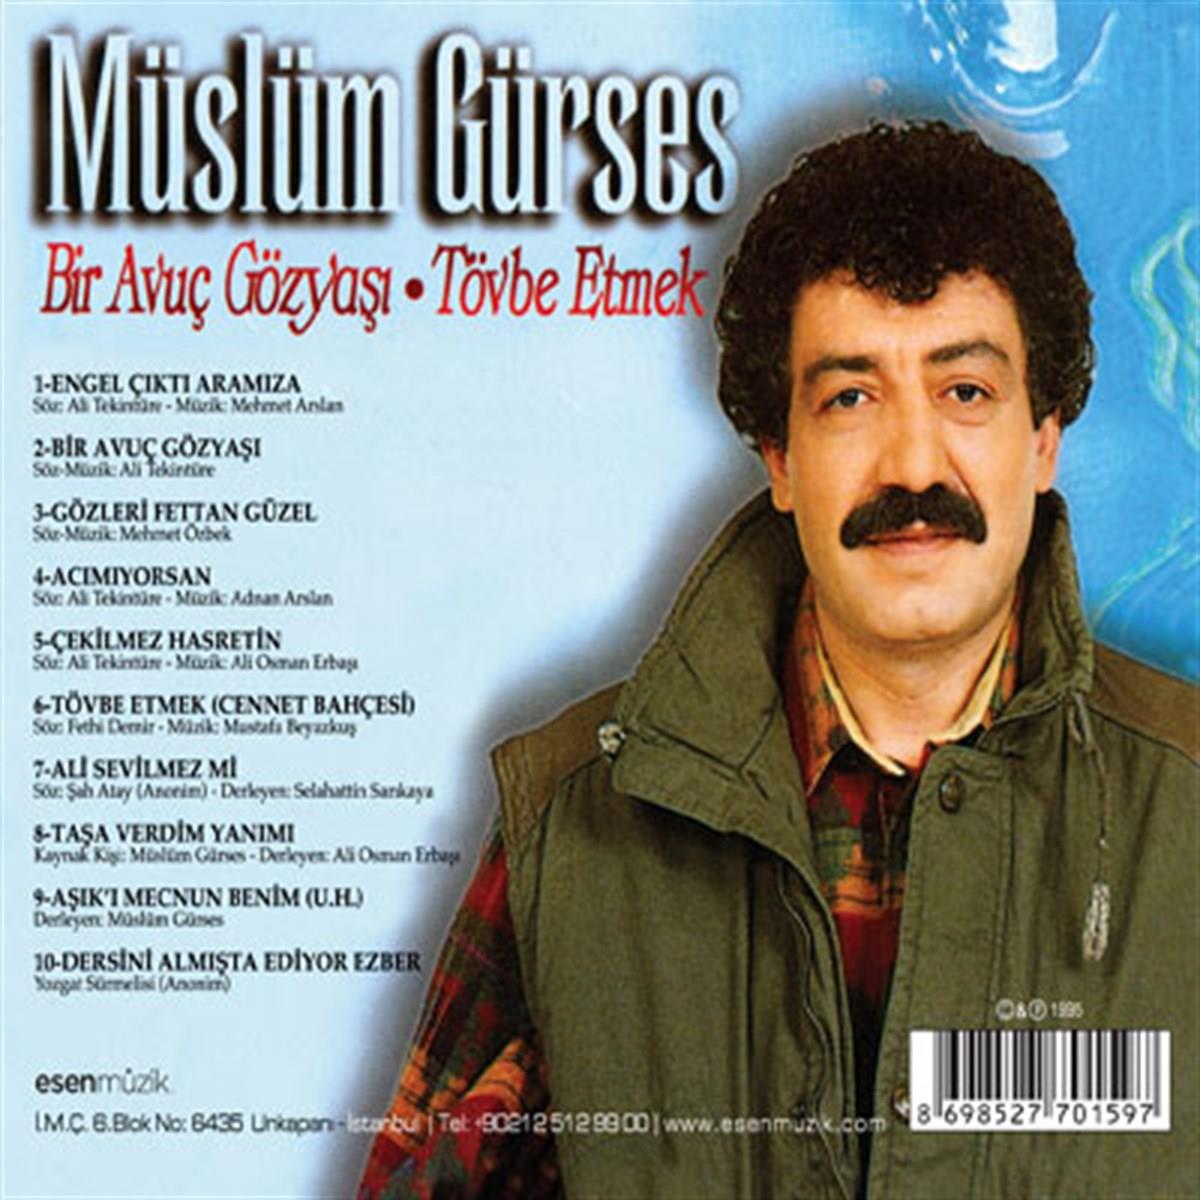 Müslüm Gürses - Bir Avuç Gözyaşı (CD) | esenshop - Plak, LP, CD, DVD